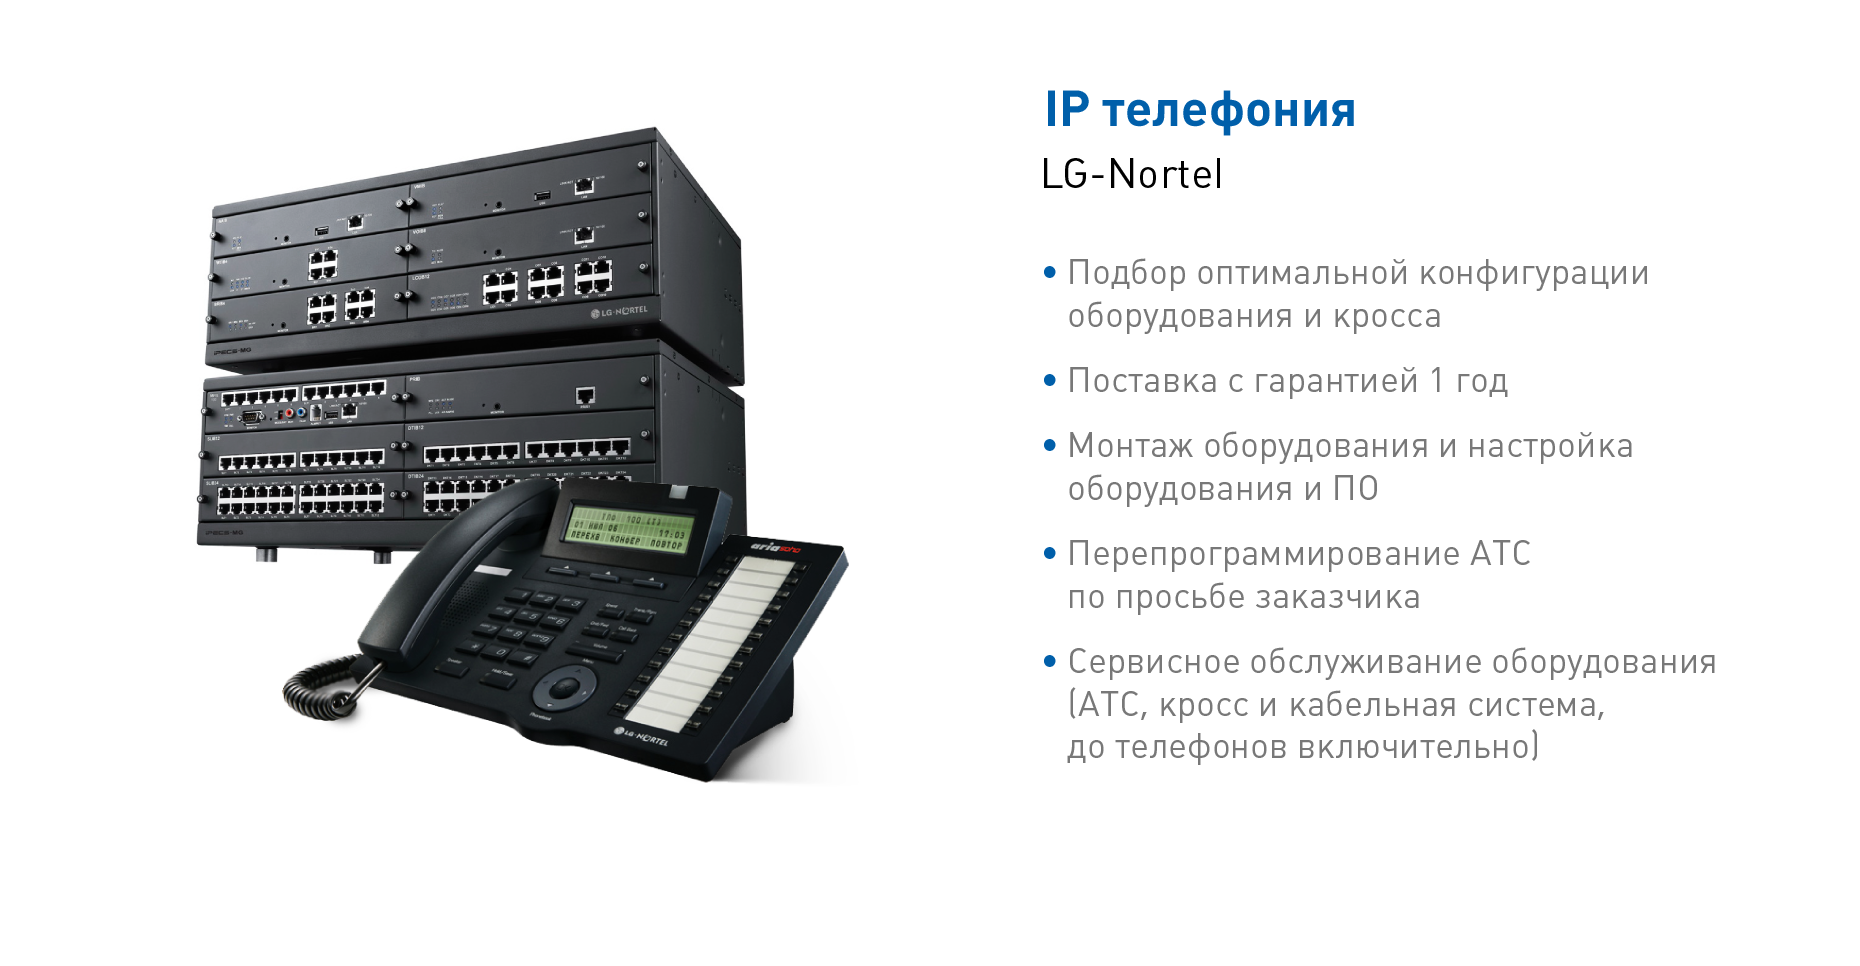 АТС и IP телефония LG Nortel